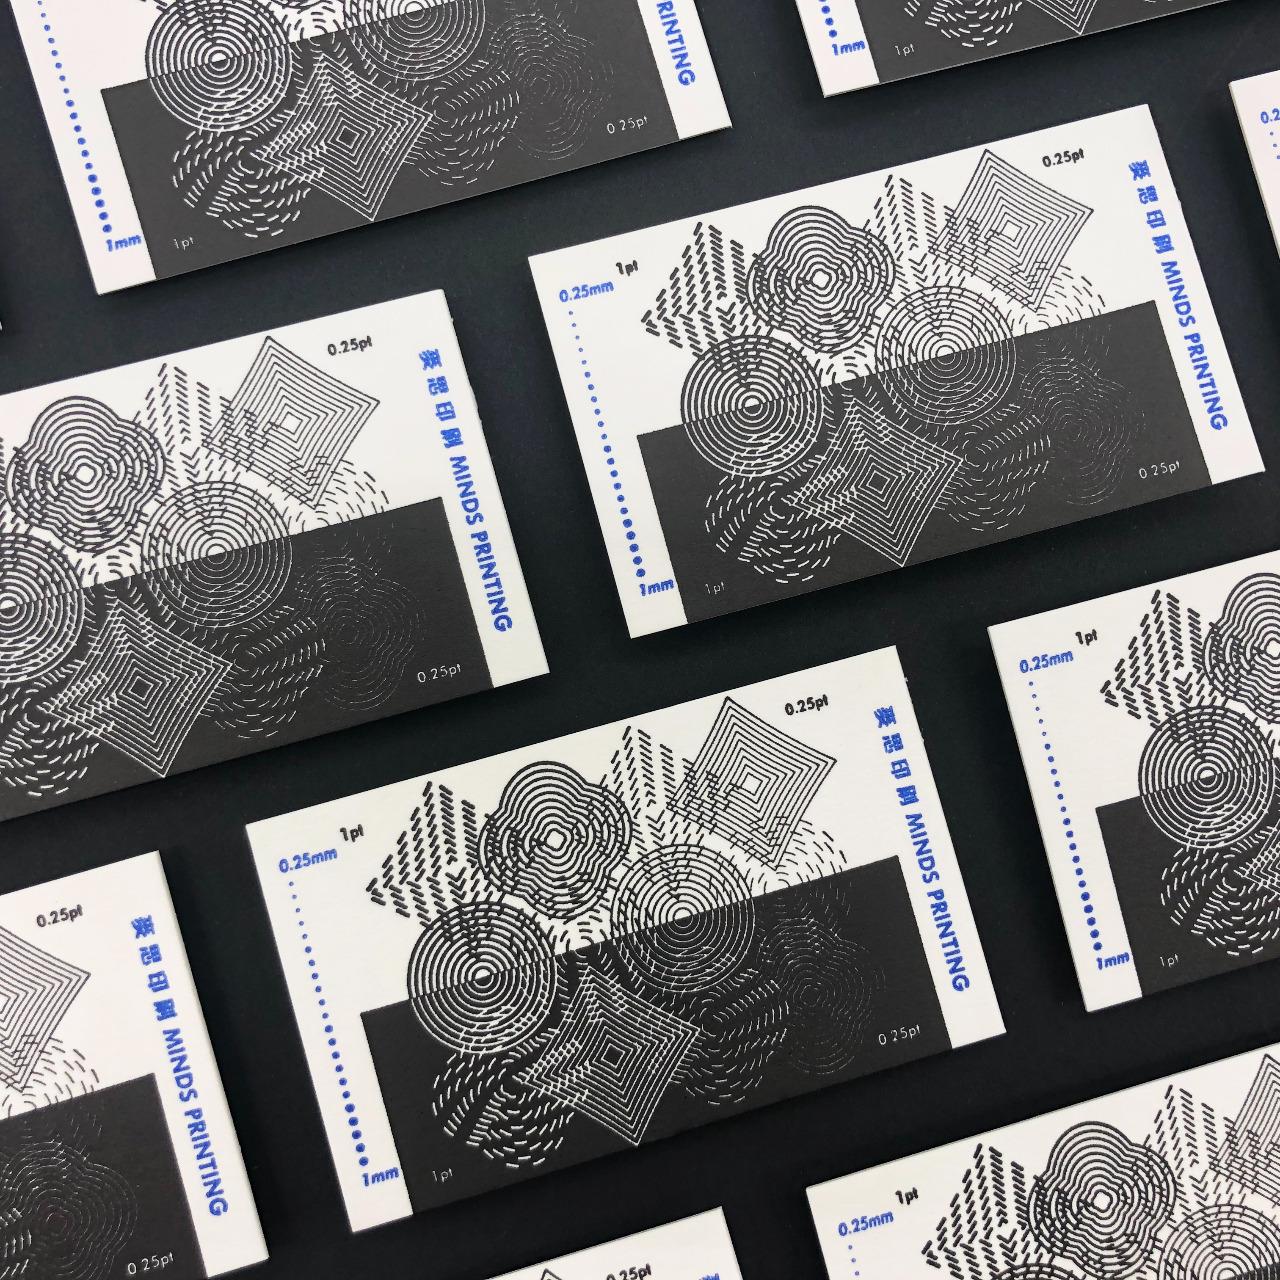 亮亮 Graphic letterpress_Business Card Design